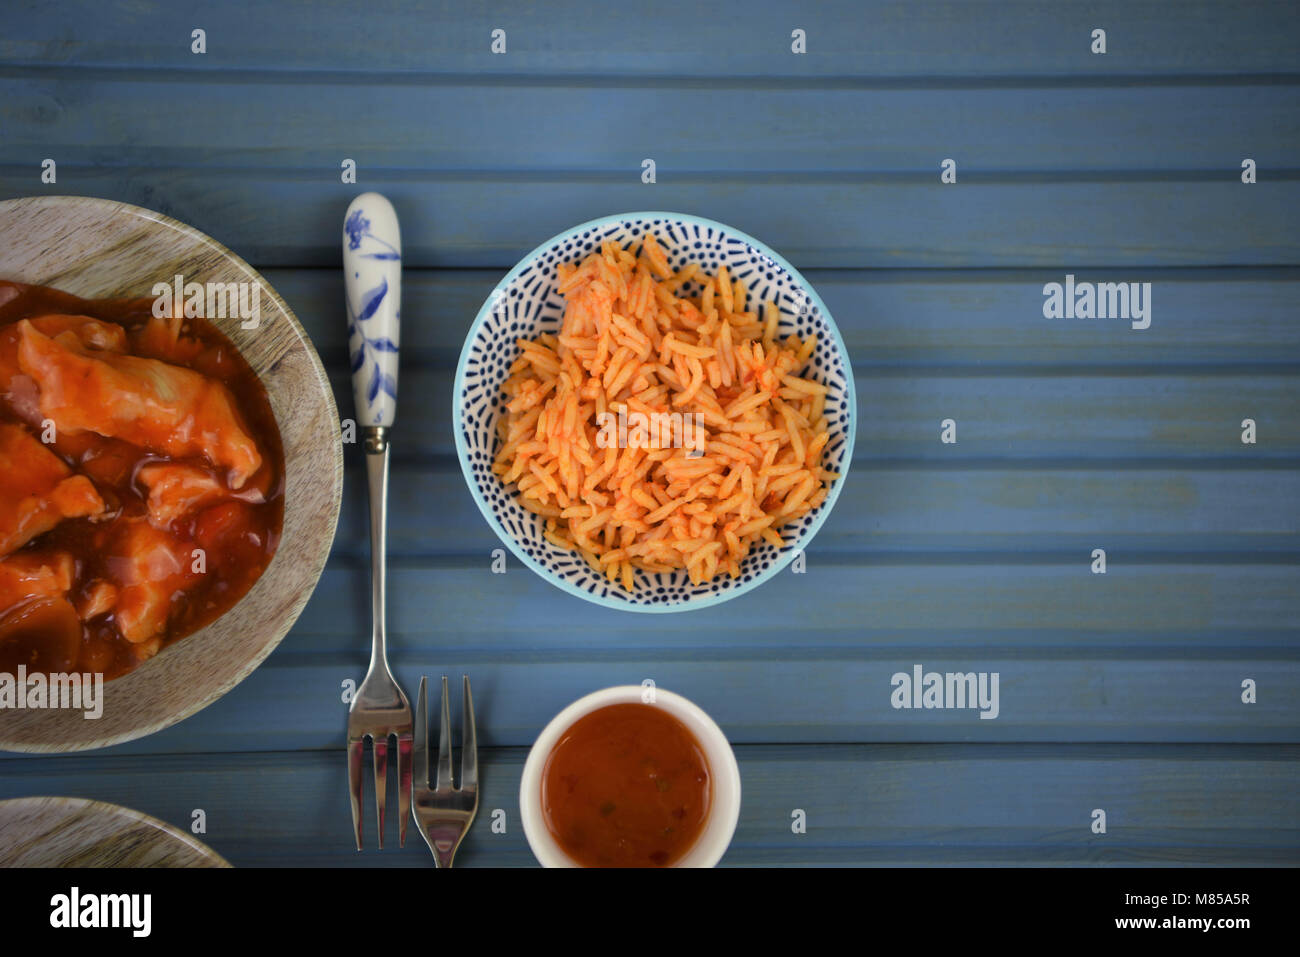 Douce chaude à emporter chinois avec de la nourriture dans les plats et servi sur une table Banque D'Images